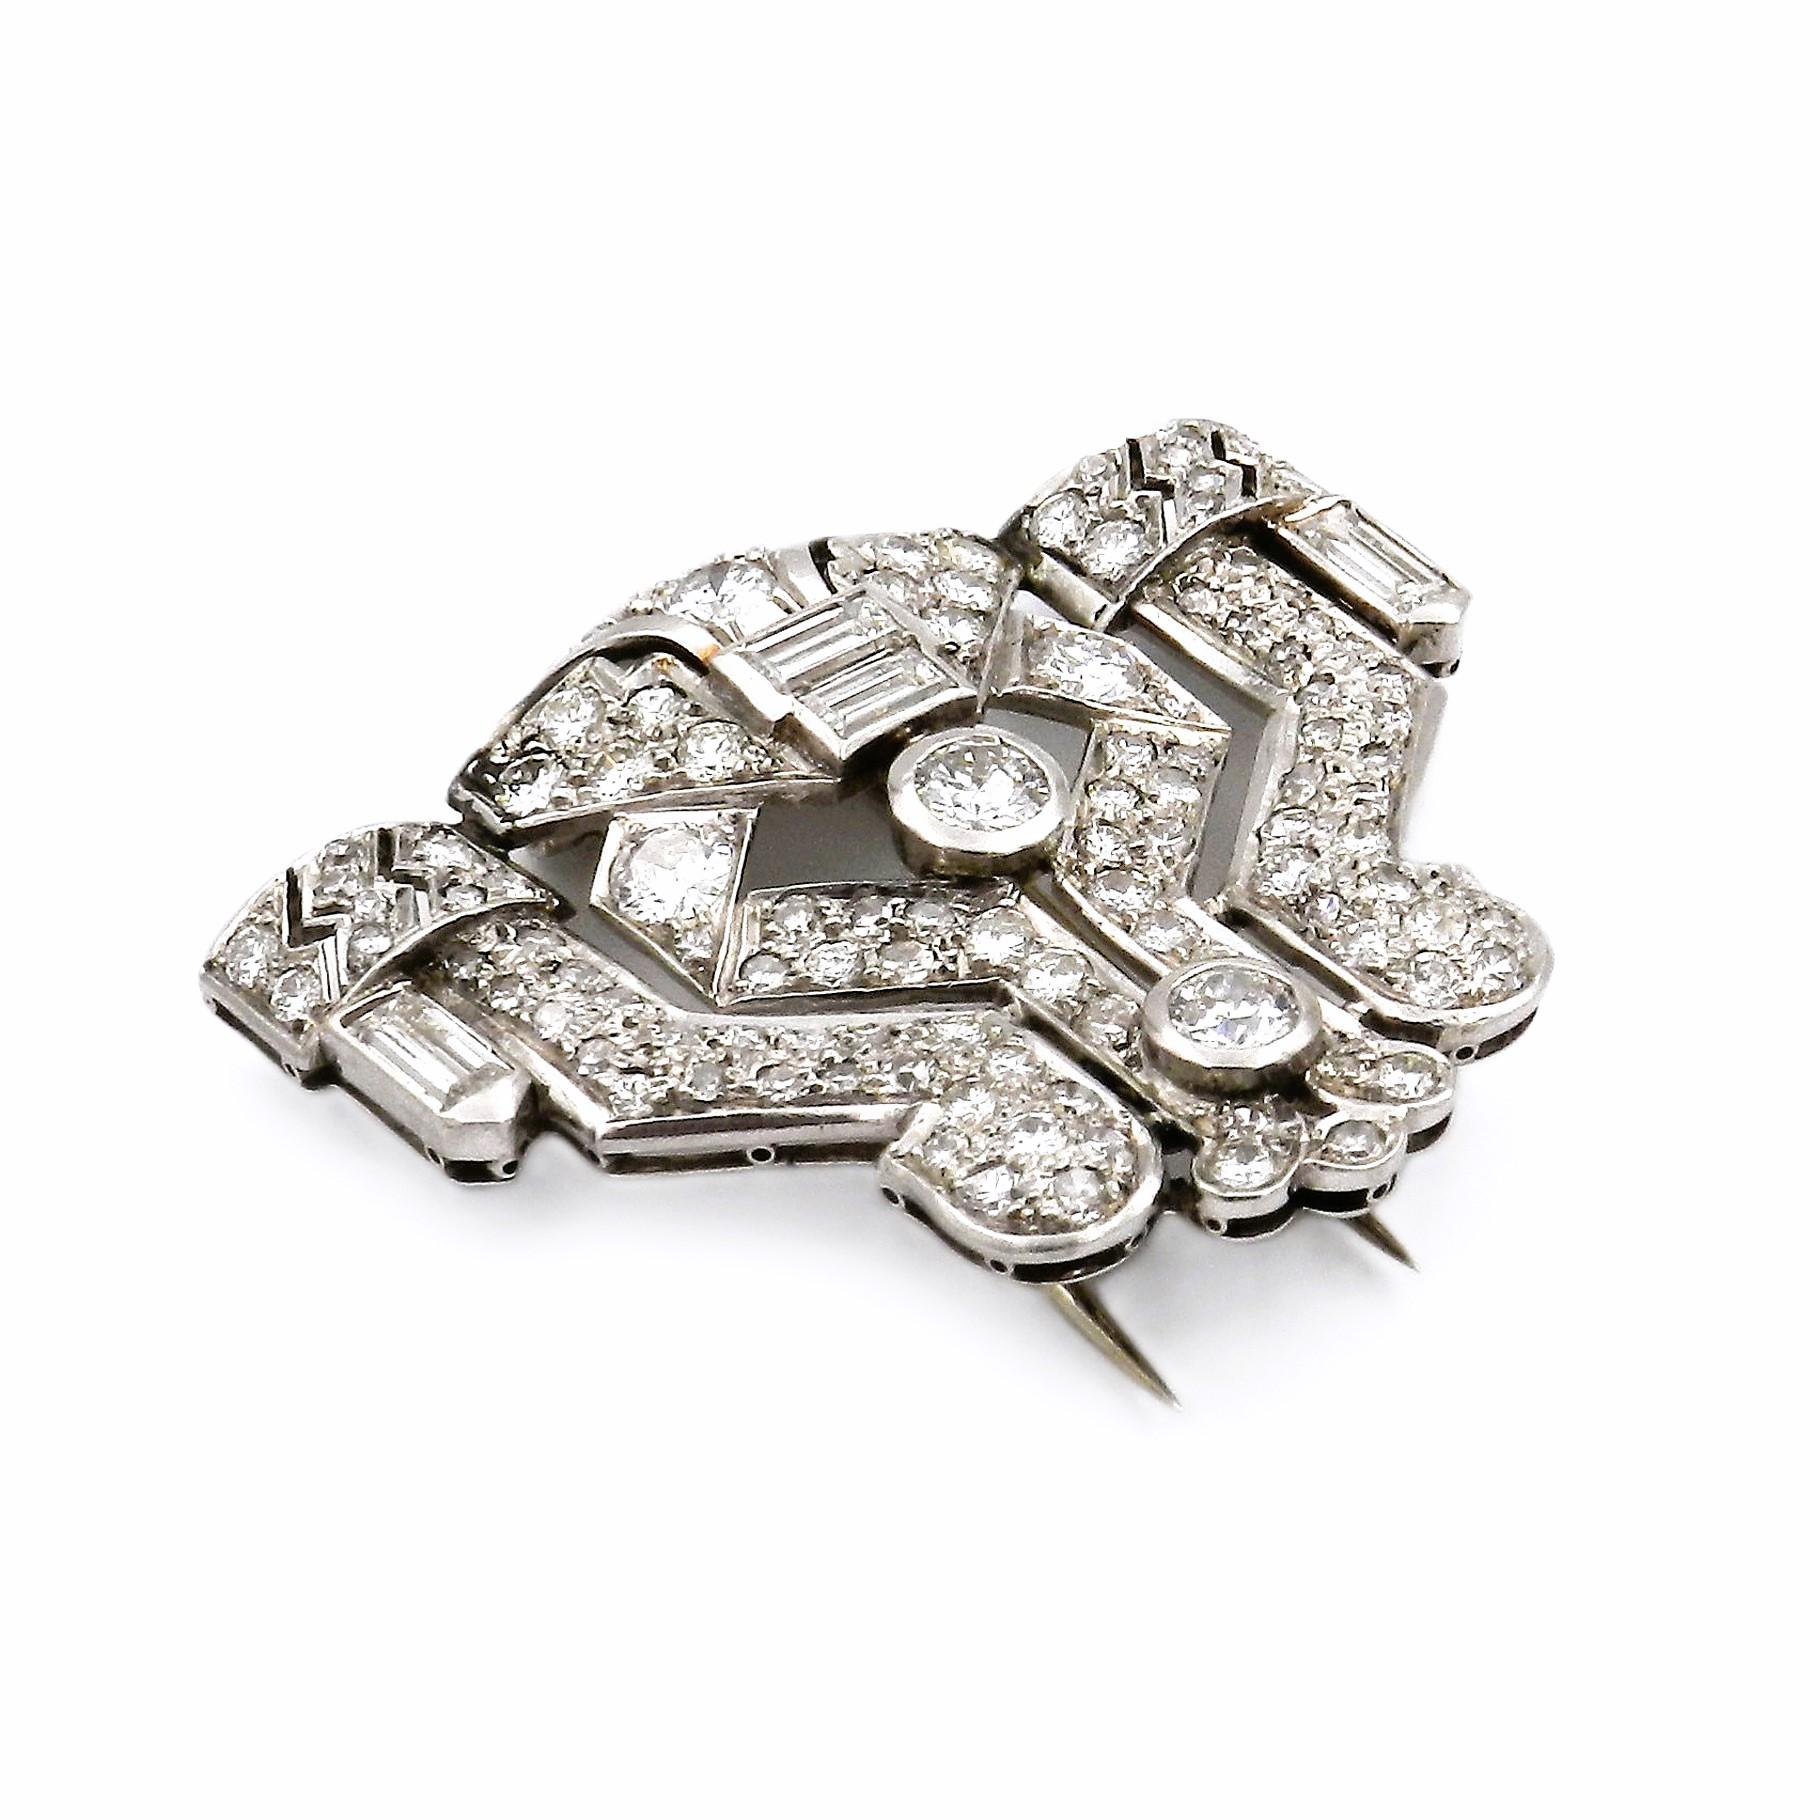 Broche Art Decó de oro blanco de 18 quilates con diamantes de 2,59 quilates circa 1925

Broche decorativo de clip de diamantes de la época Art Déco, alrededor de 1925. Diseñada geométricamente con motivos de cintas y engastada con 115 diamantes